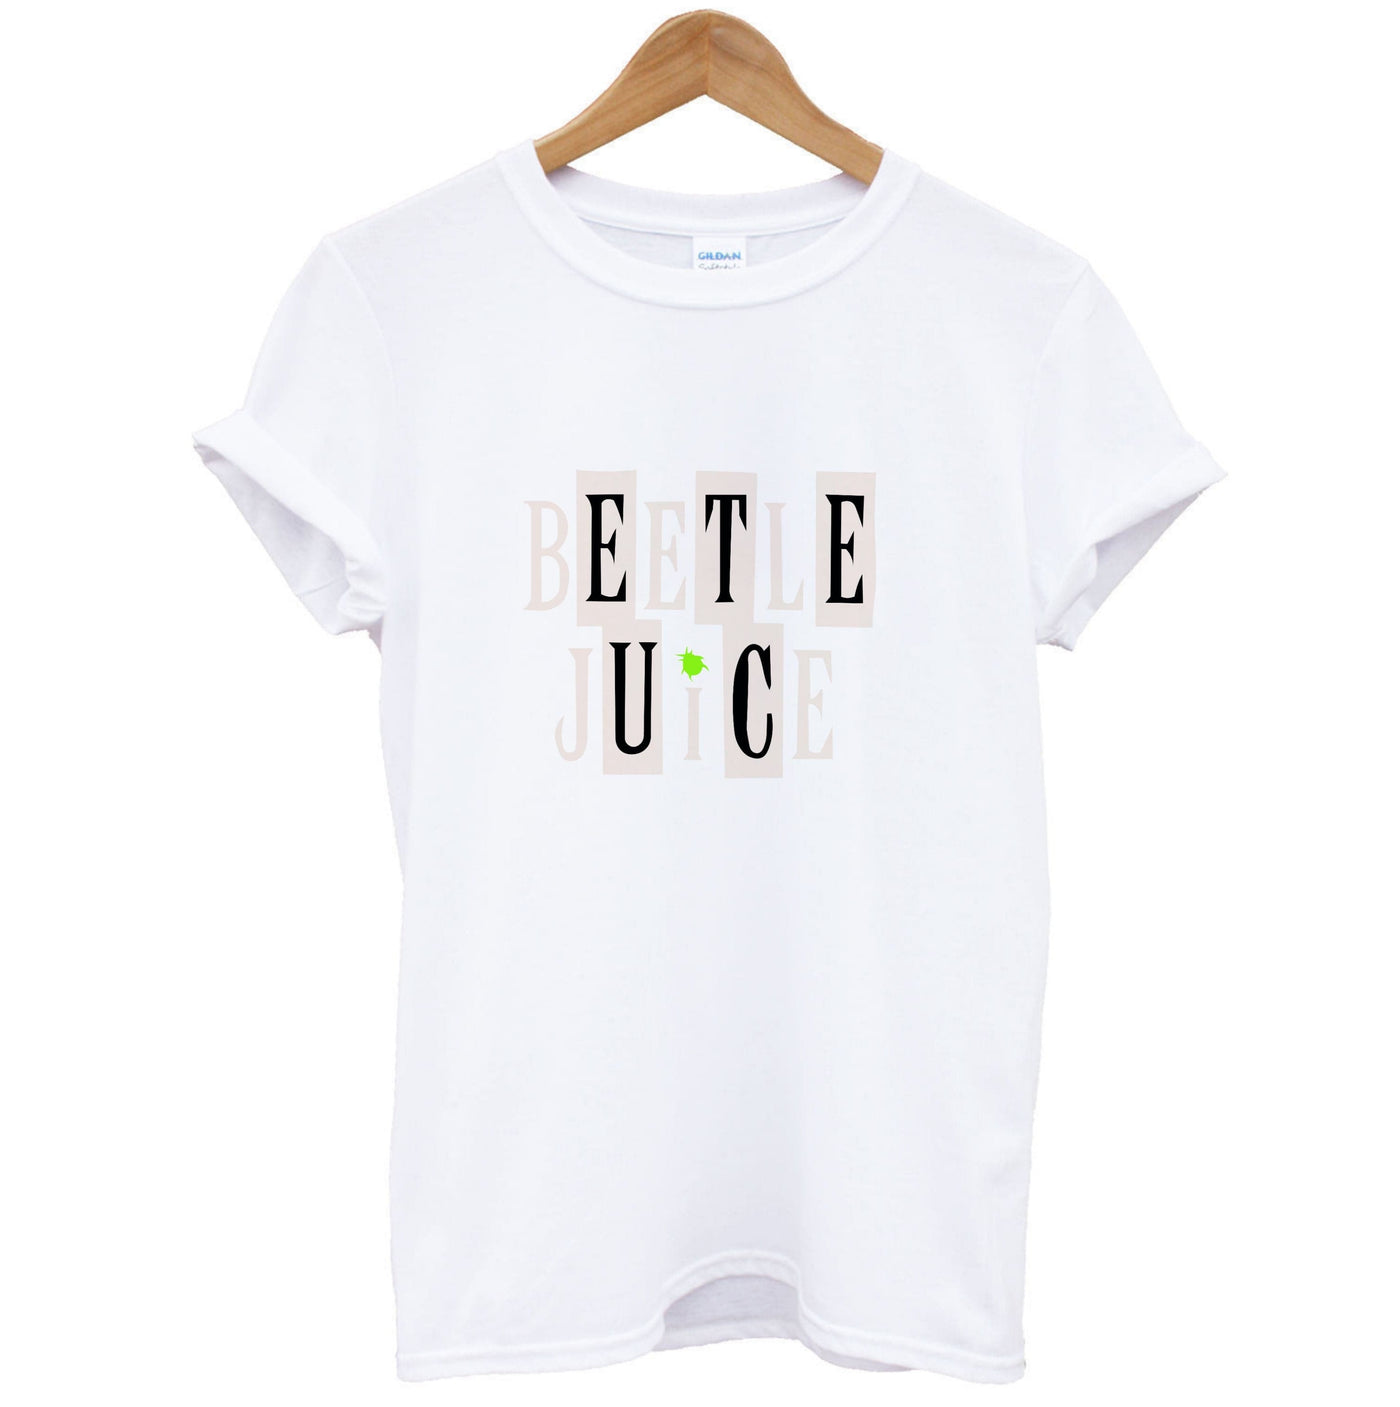 Text - Beetlejuice T-Shirt